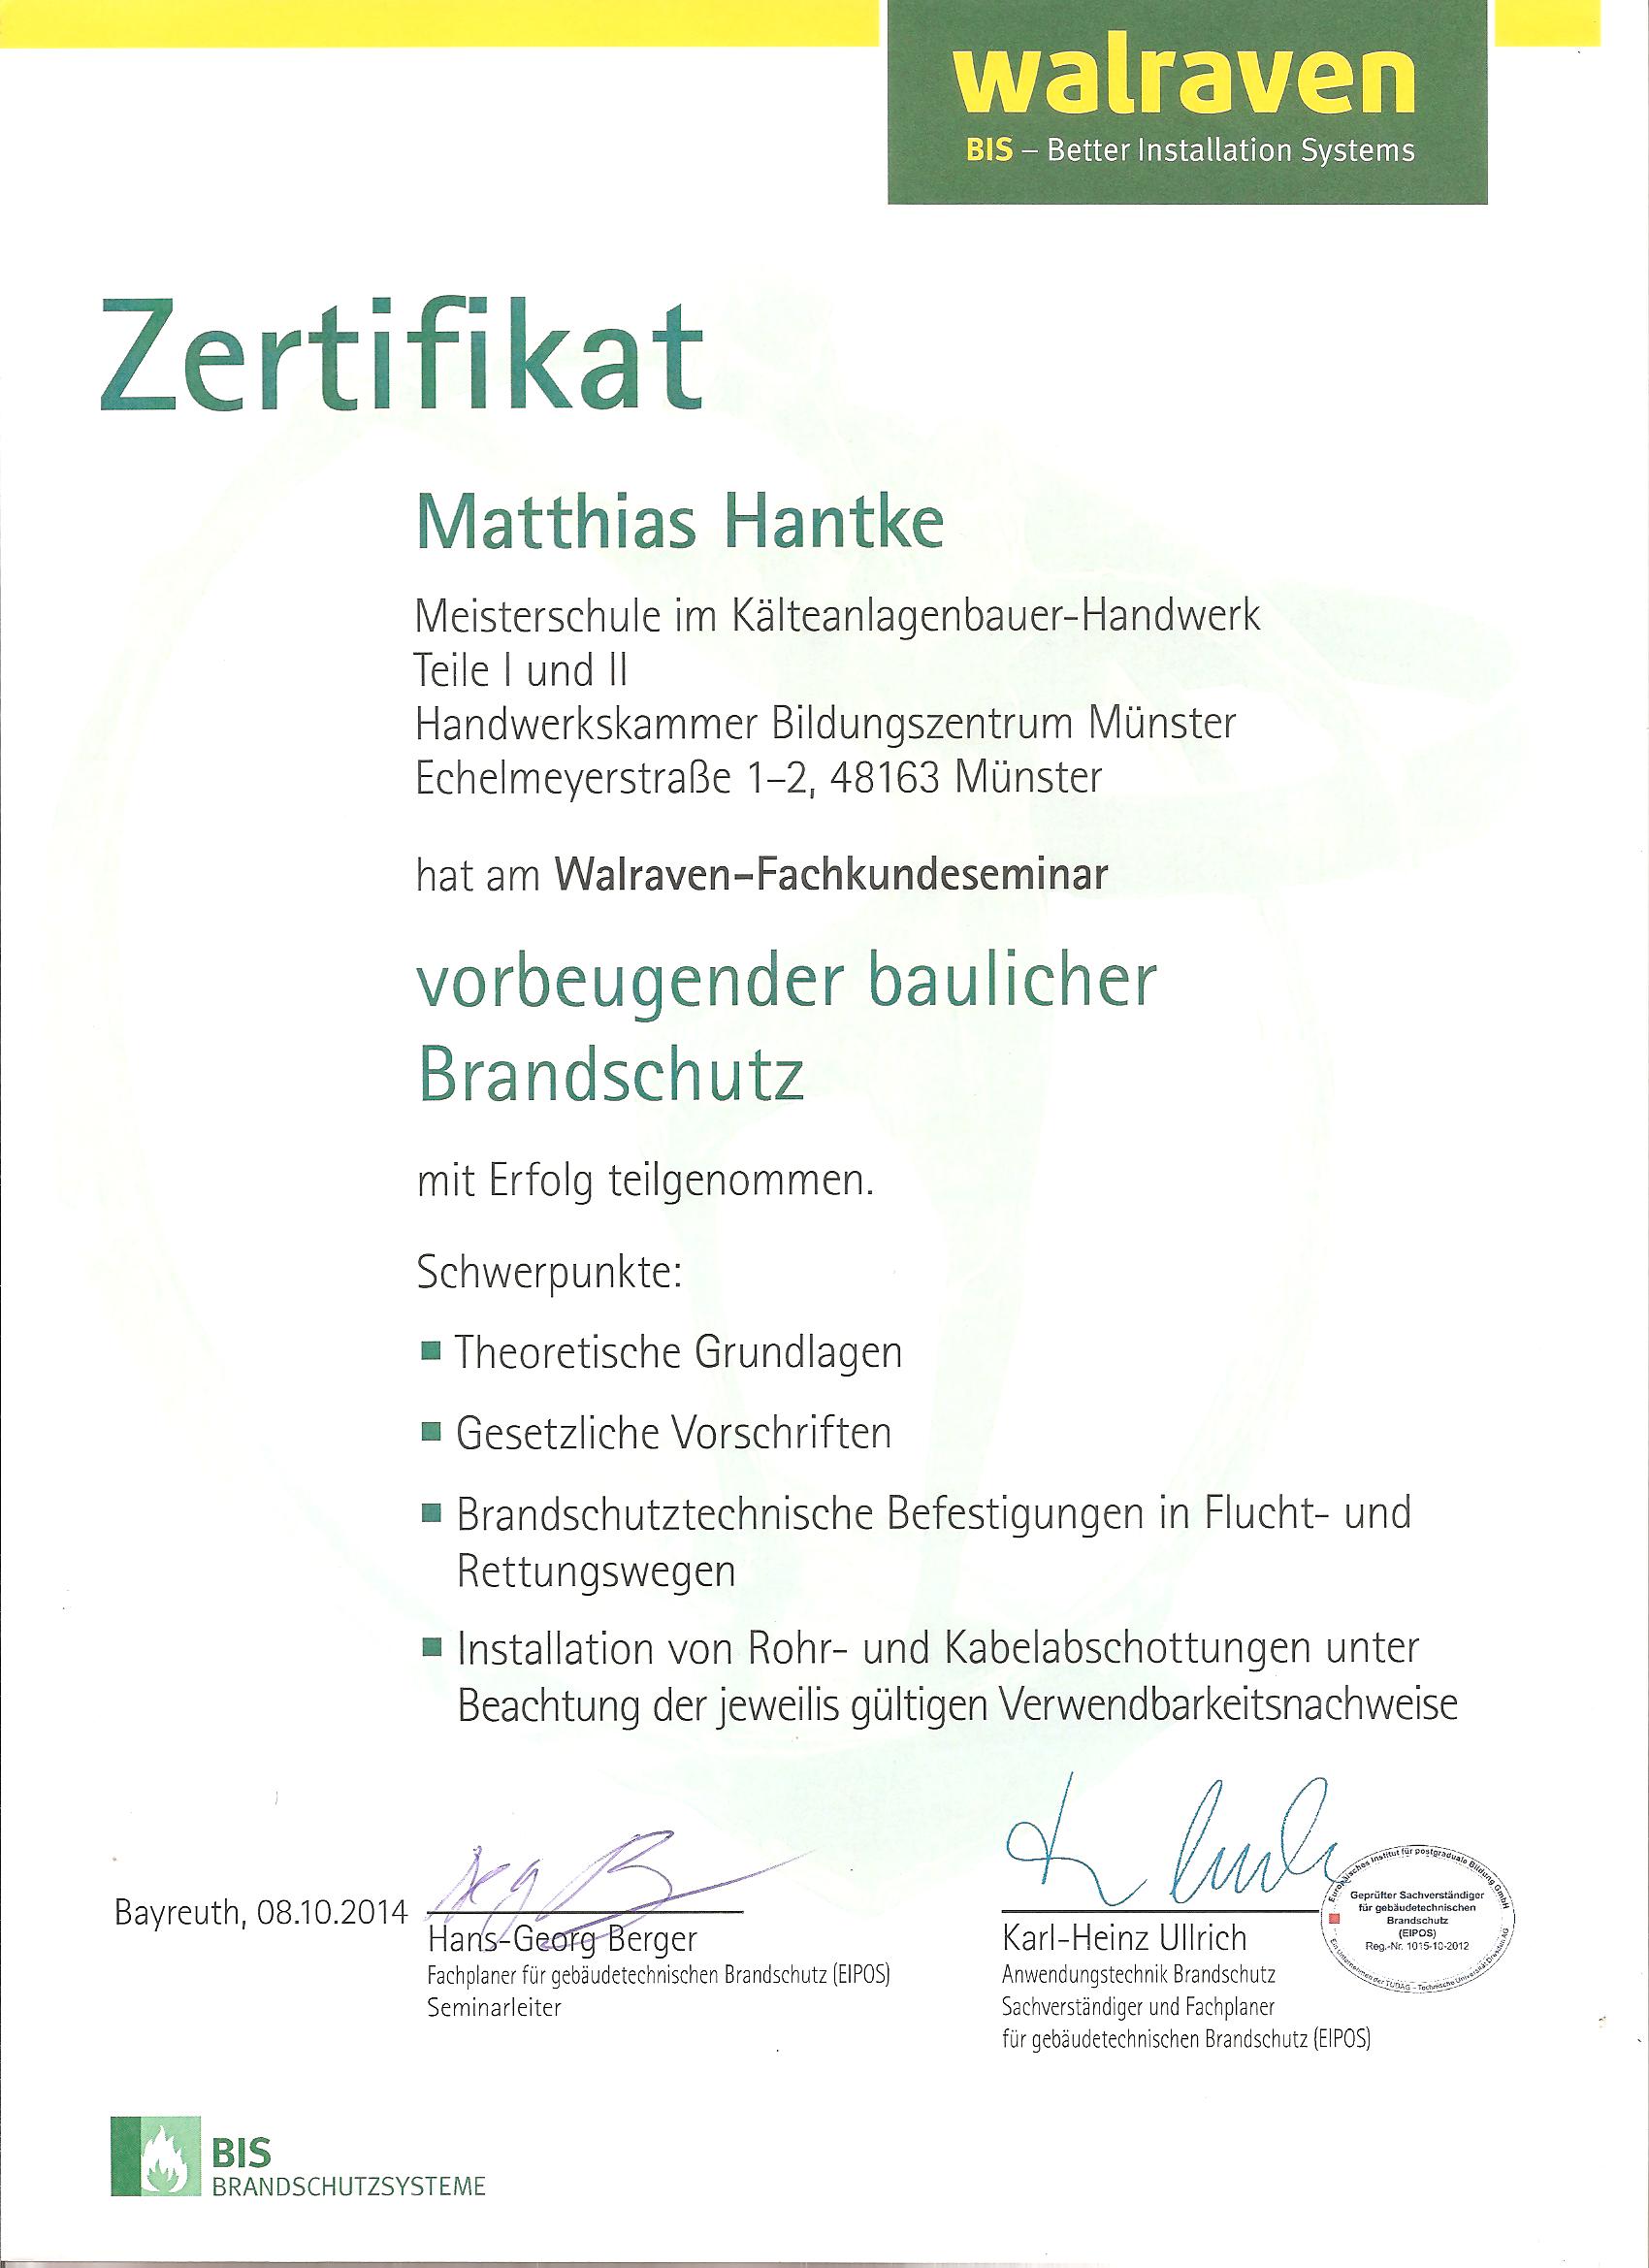 Baulicher Brandschutz Zertifikat KKT Hantke